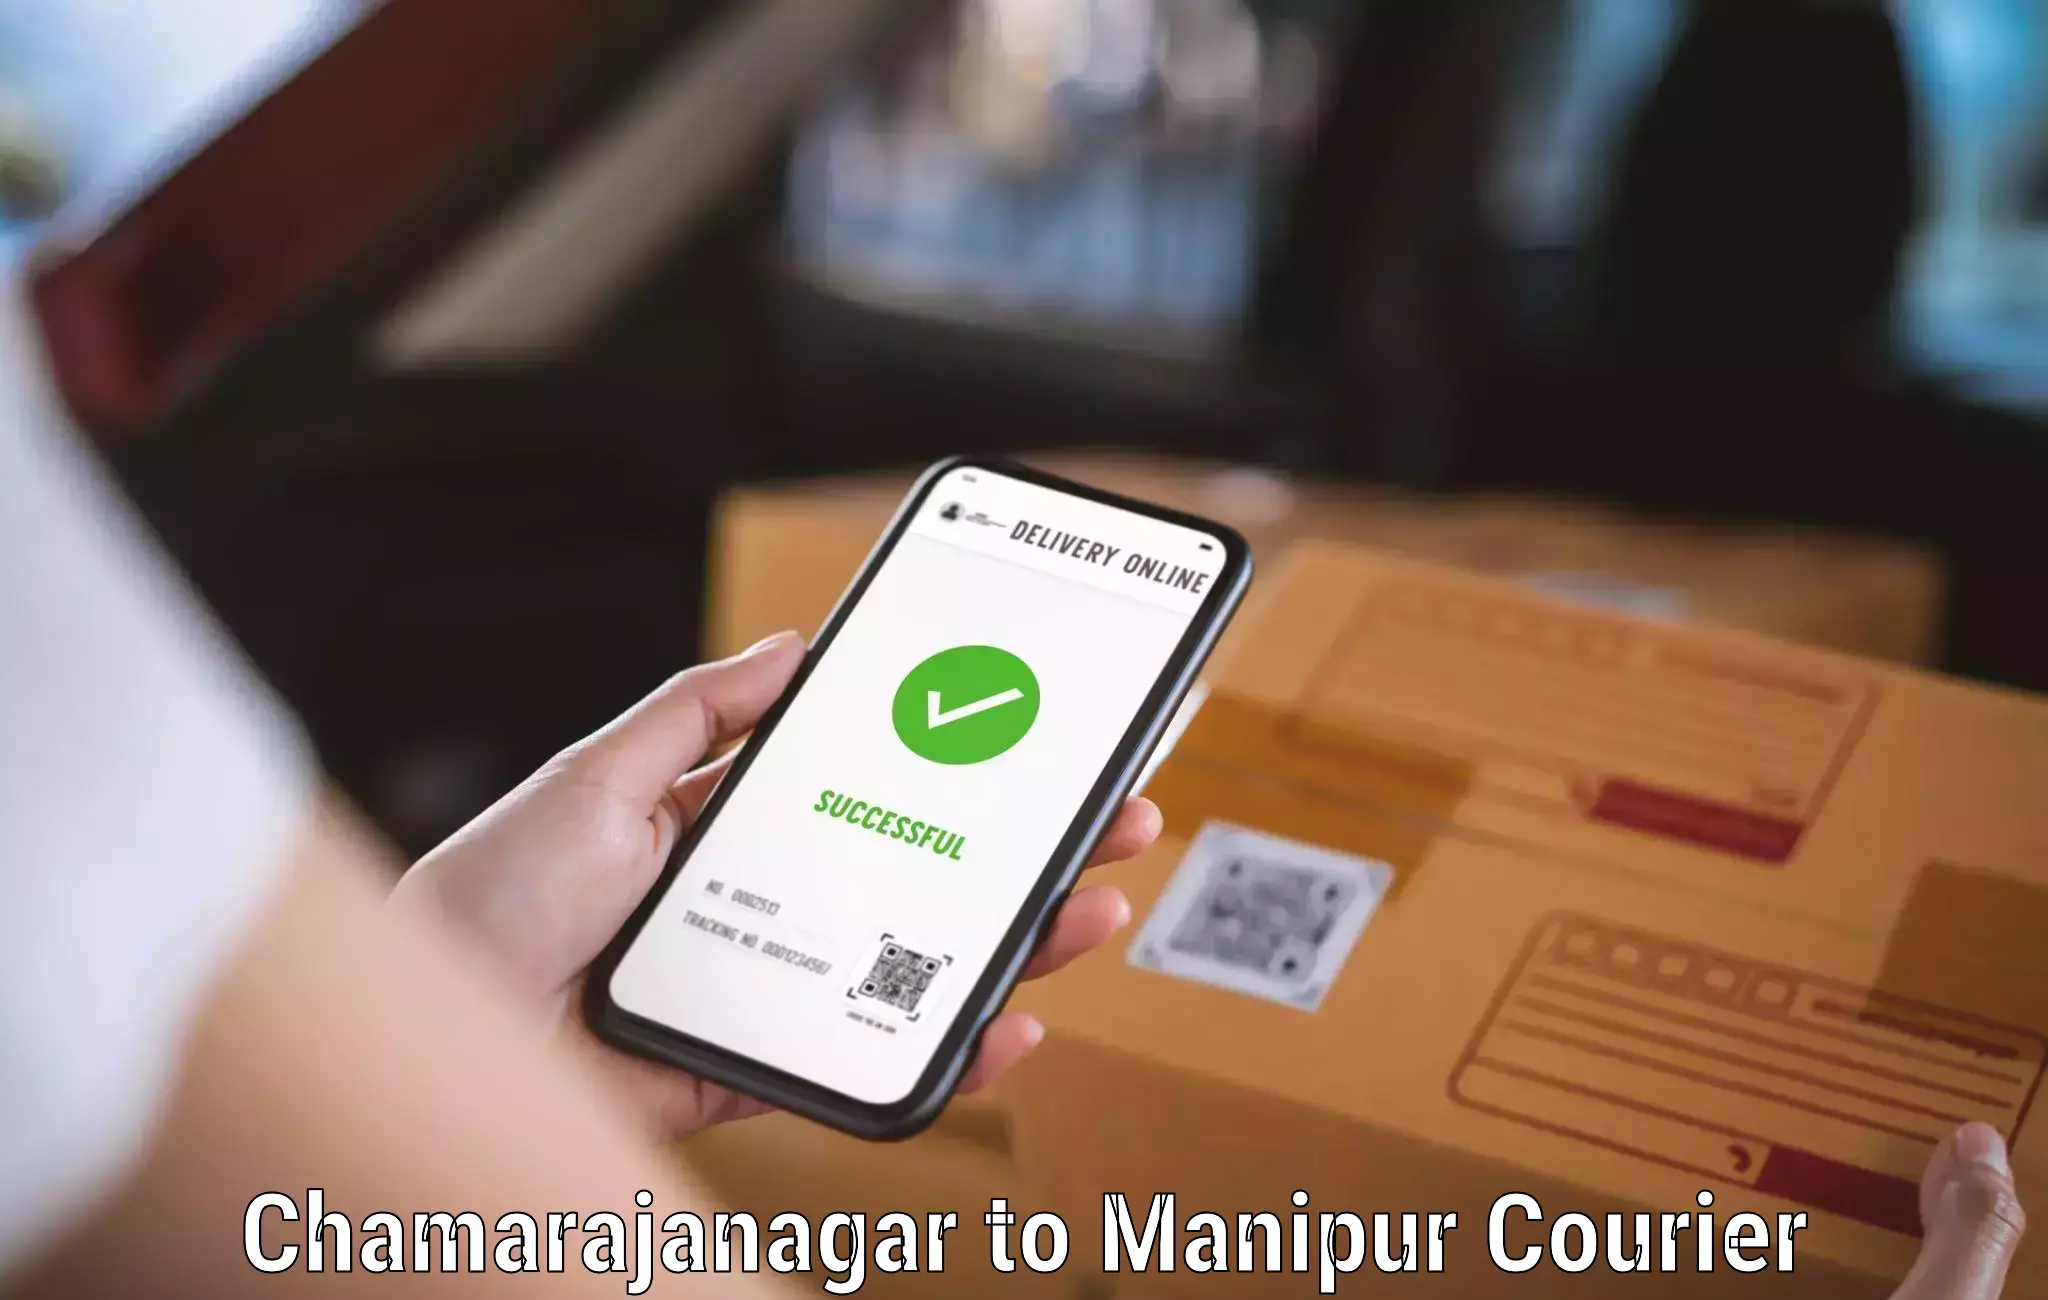 Door-to-door freight service Chamarajanagar to Manipur